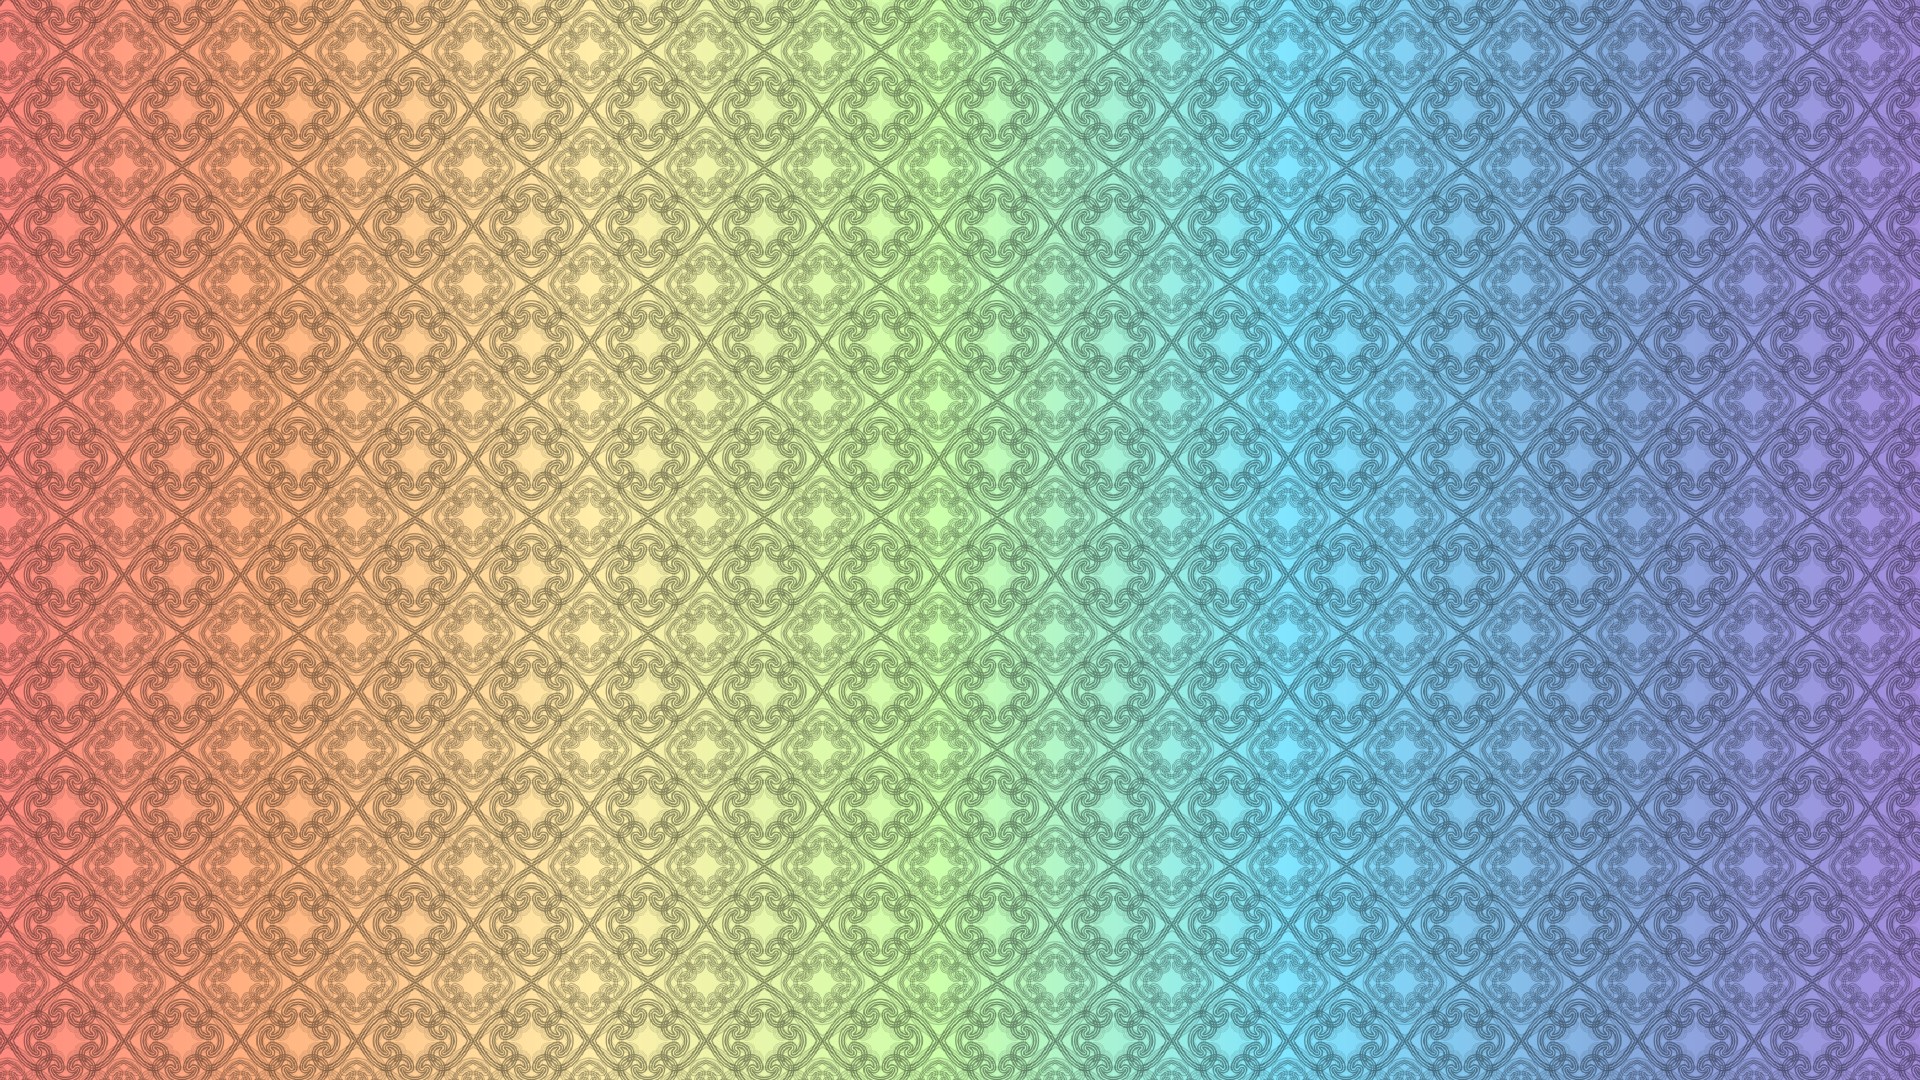 2pattern Vertical Rainbow HD Wallpaper By Elideli On